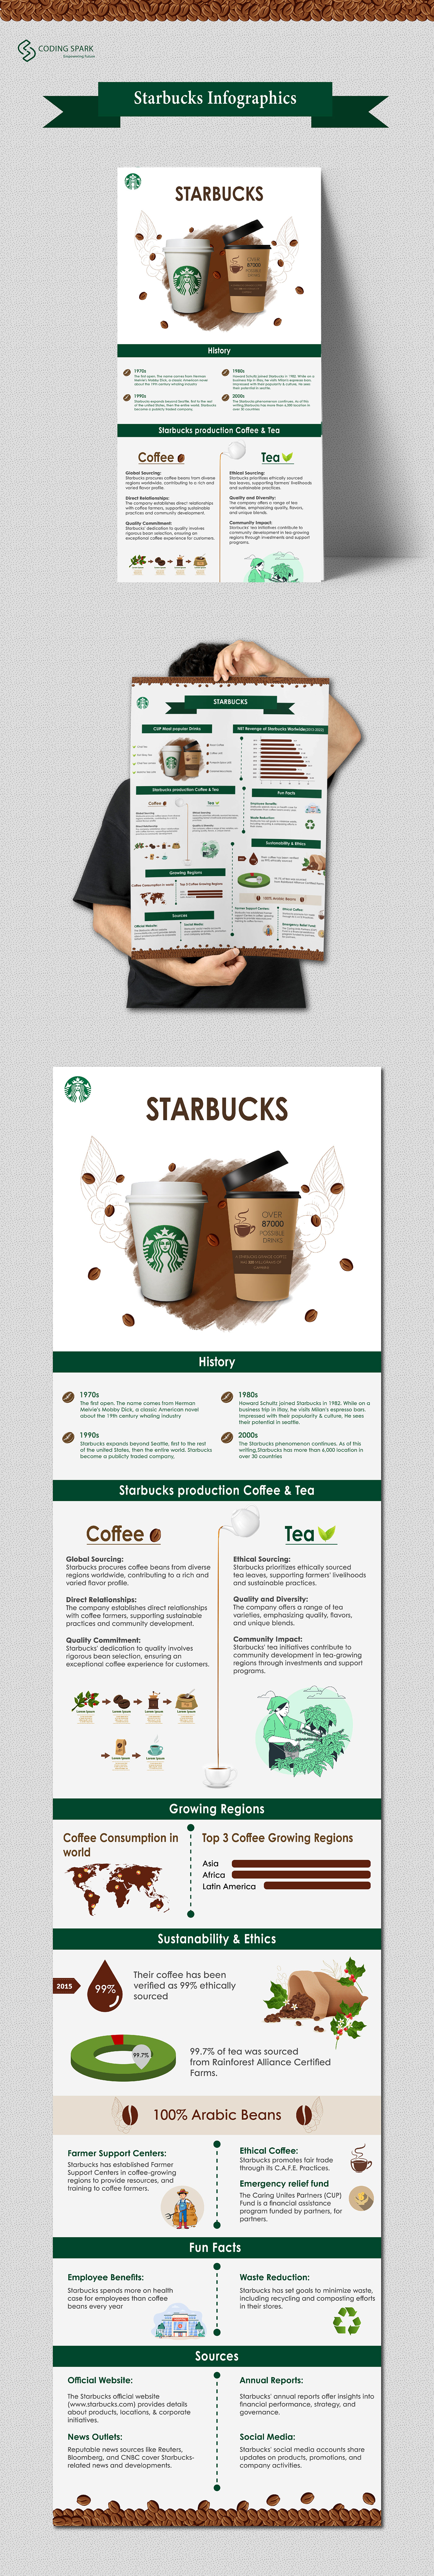 Starbucks Coffee starbucks Coffee history infographics green tea starbucks cold cup starbucks history tea